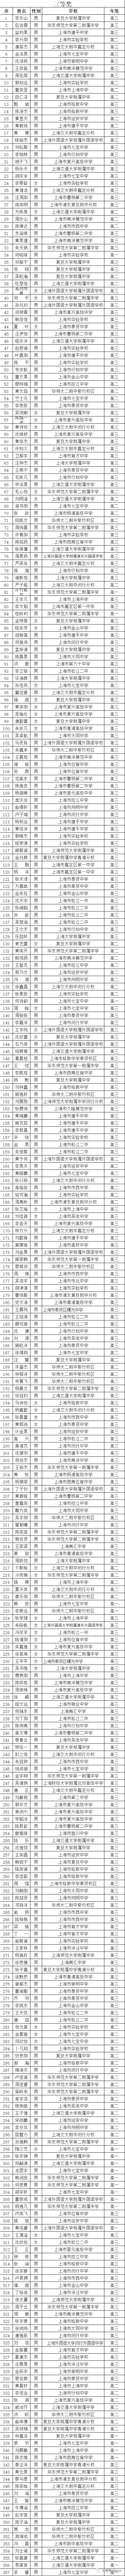 上海市2020年高中数学联赛省三获奖名单